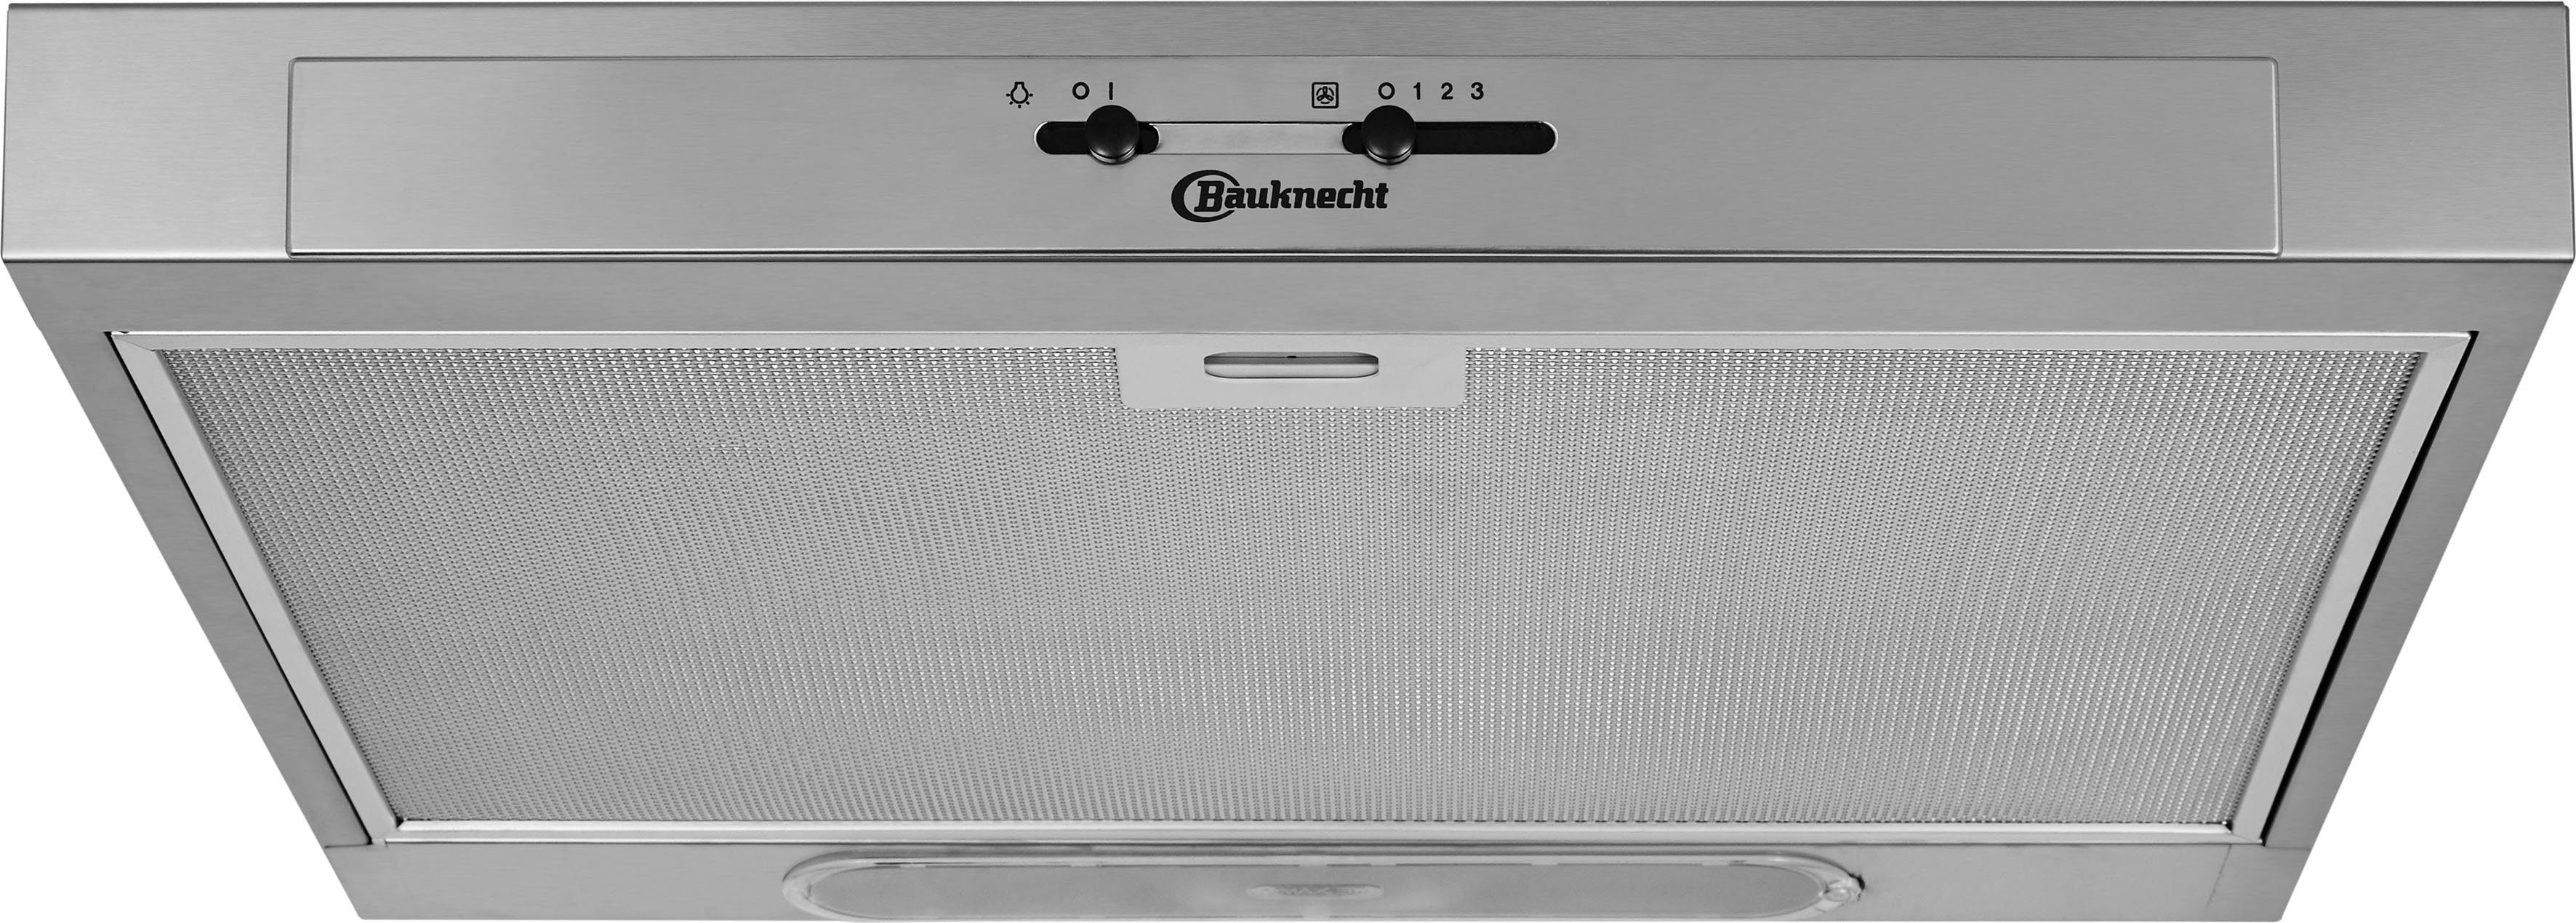 BAUKNECHT Unterbauhaube DC 5460 IN/1, 60 cm